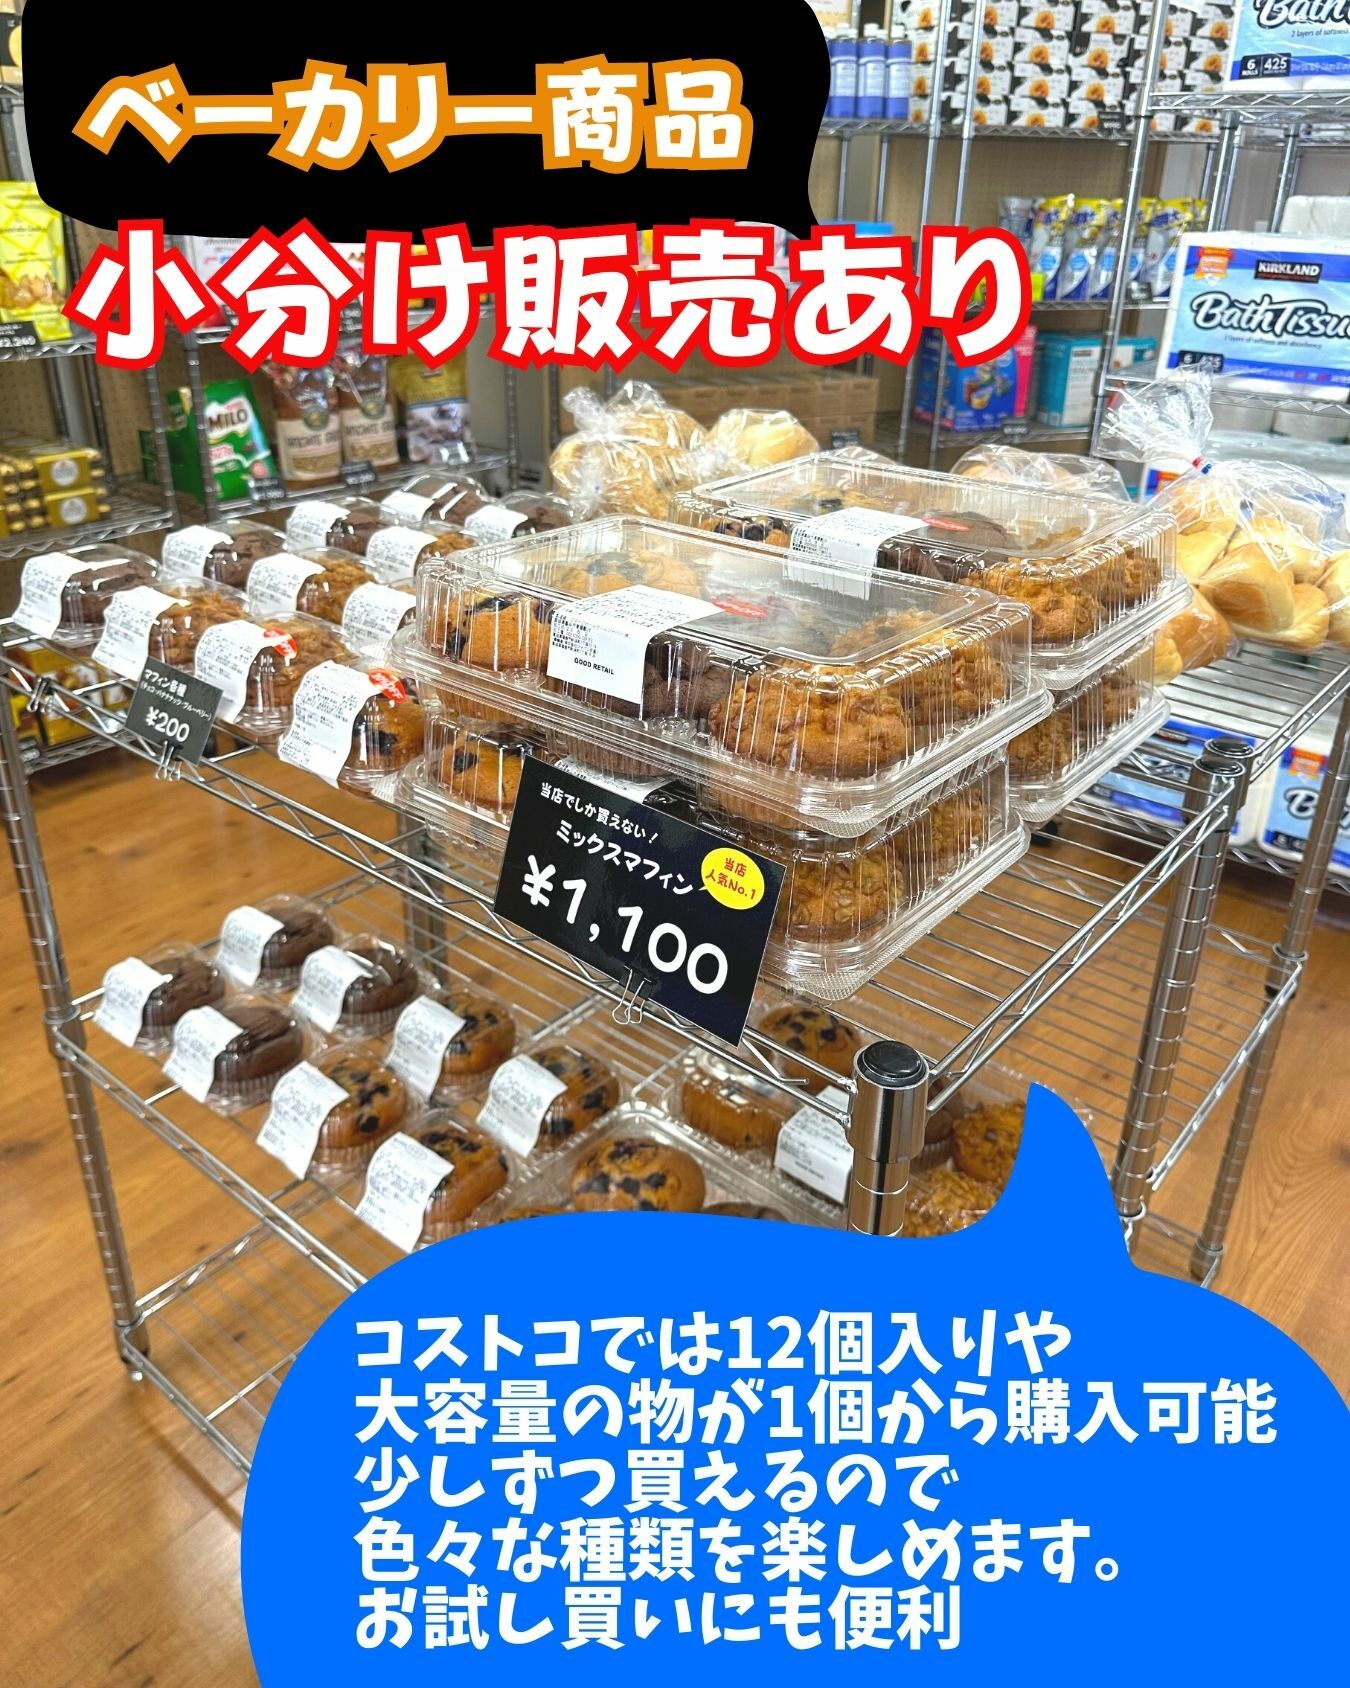 【コストコ】再販店ではベーカリーコーナーの商品も小売り販売